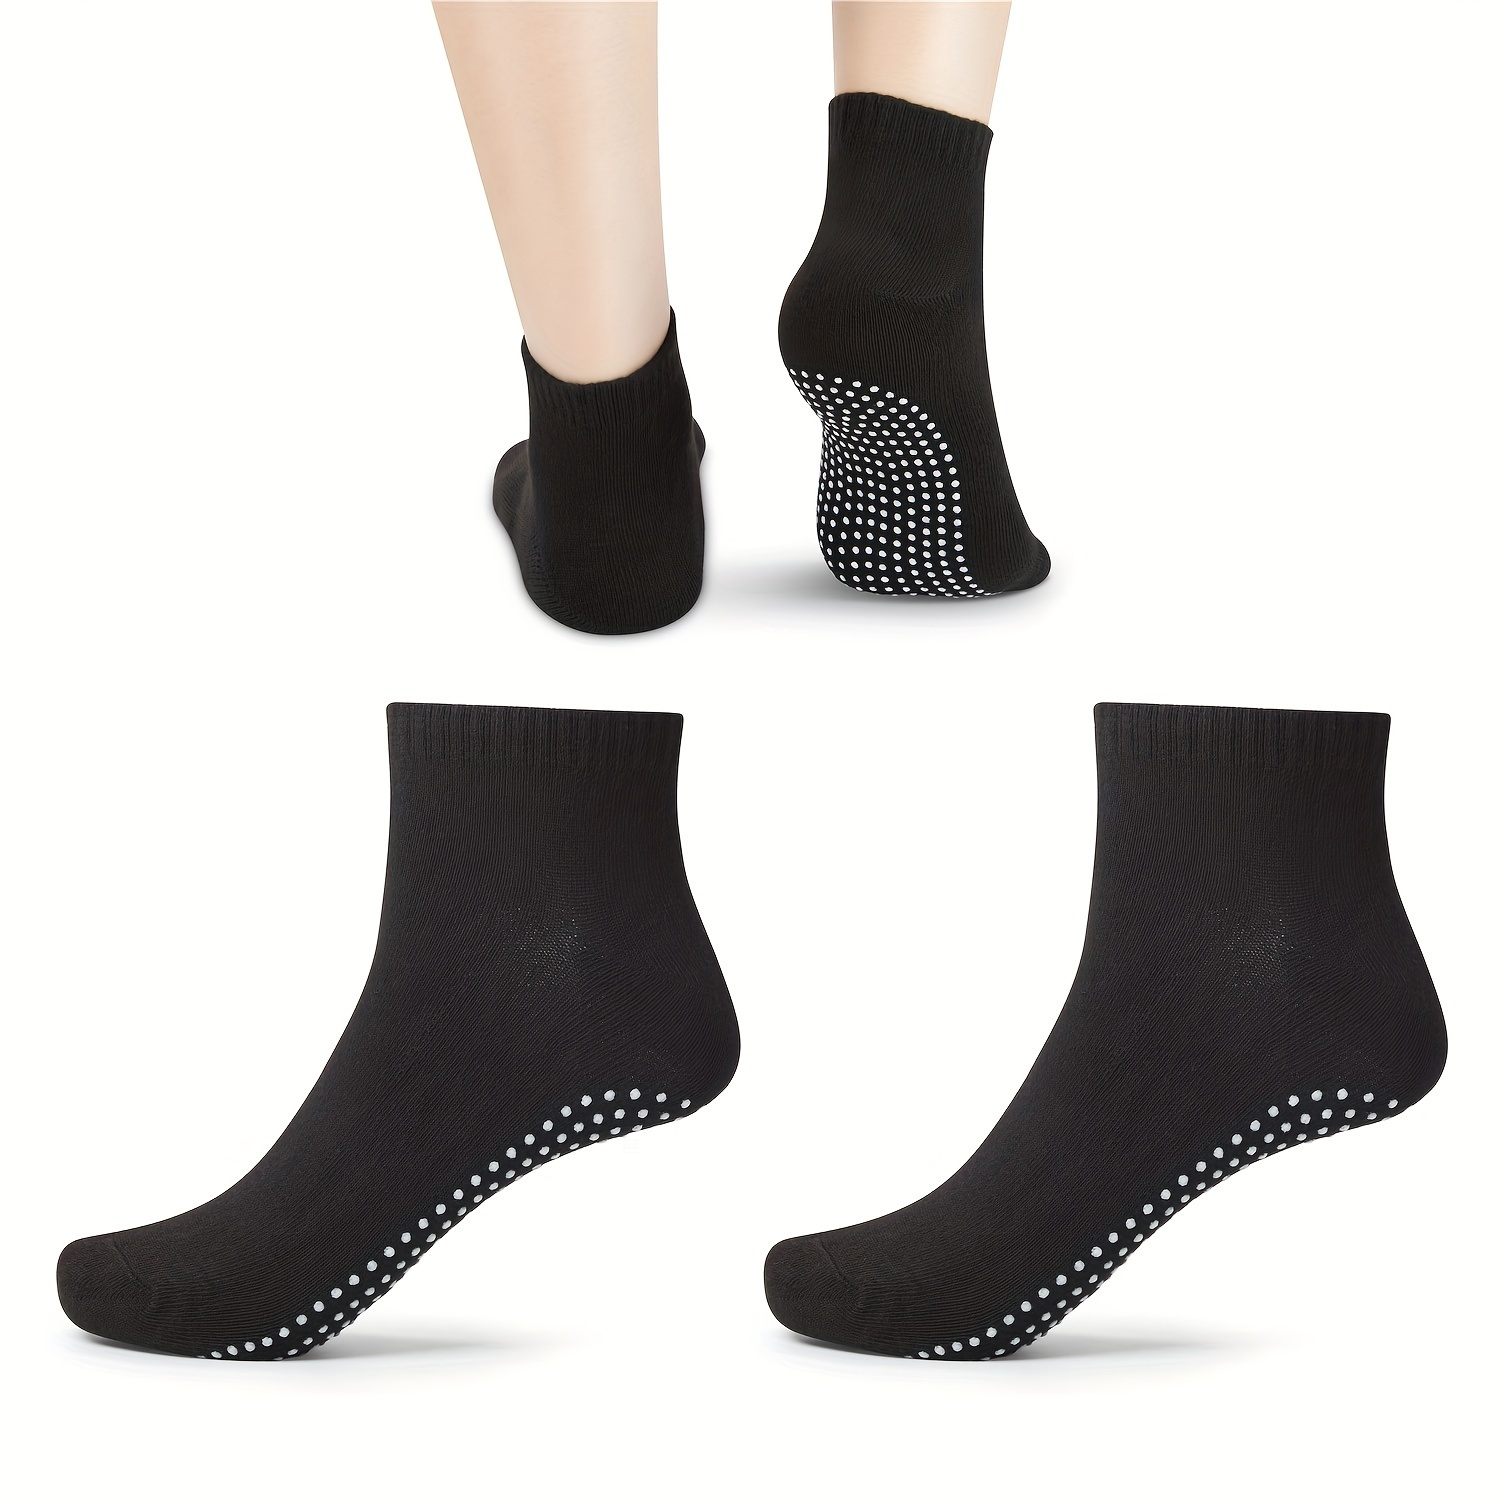 Grip Socks Anti Skid Non-Slip Socks Unisex Cotton Women Men